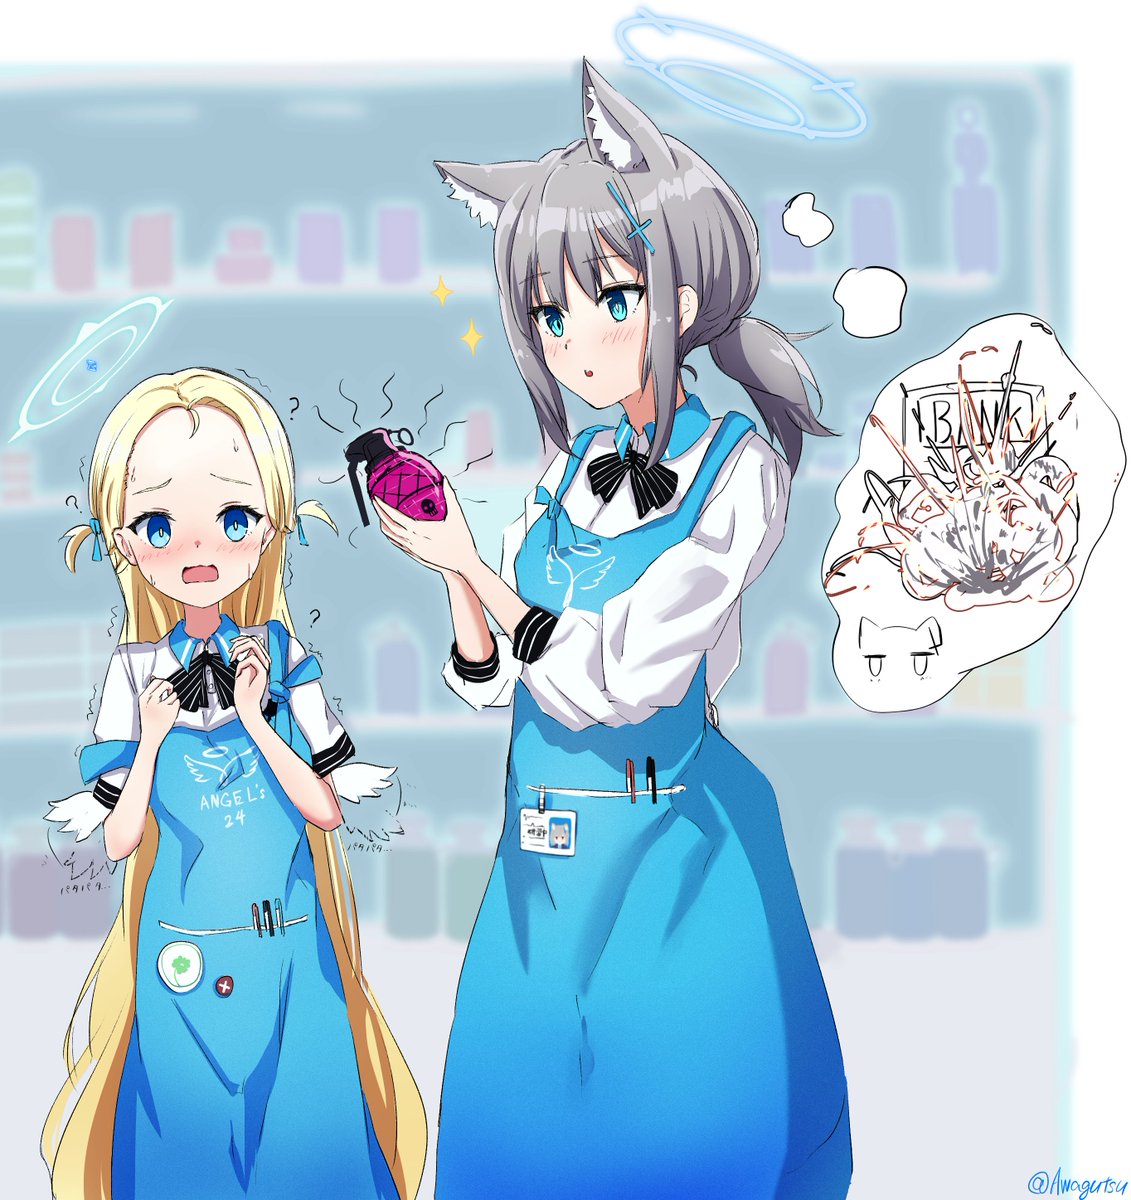 shiroko (blue archive) multiple girls 2girls blue apron animal ears halo blue eyes apron  illustration images